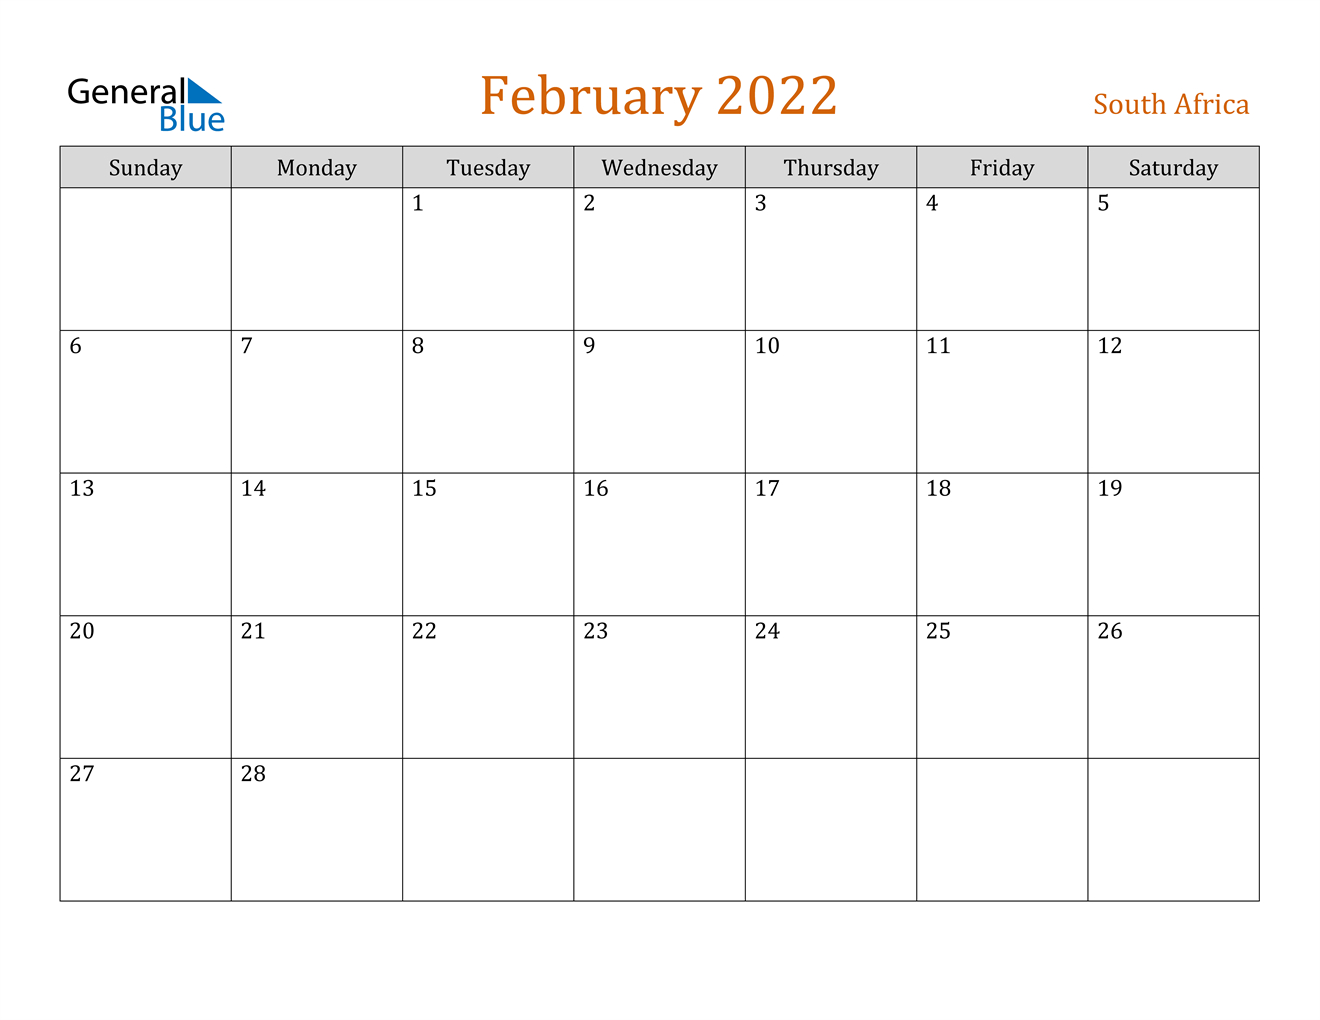 February 2022 Calendar - South Africa